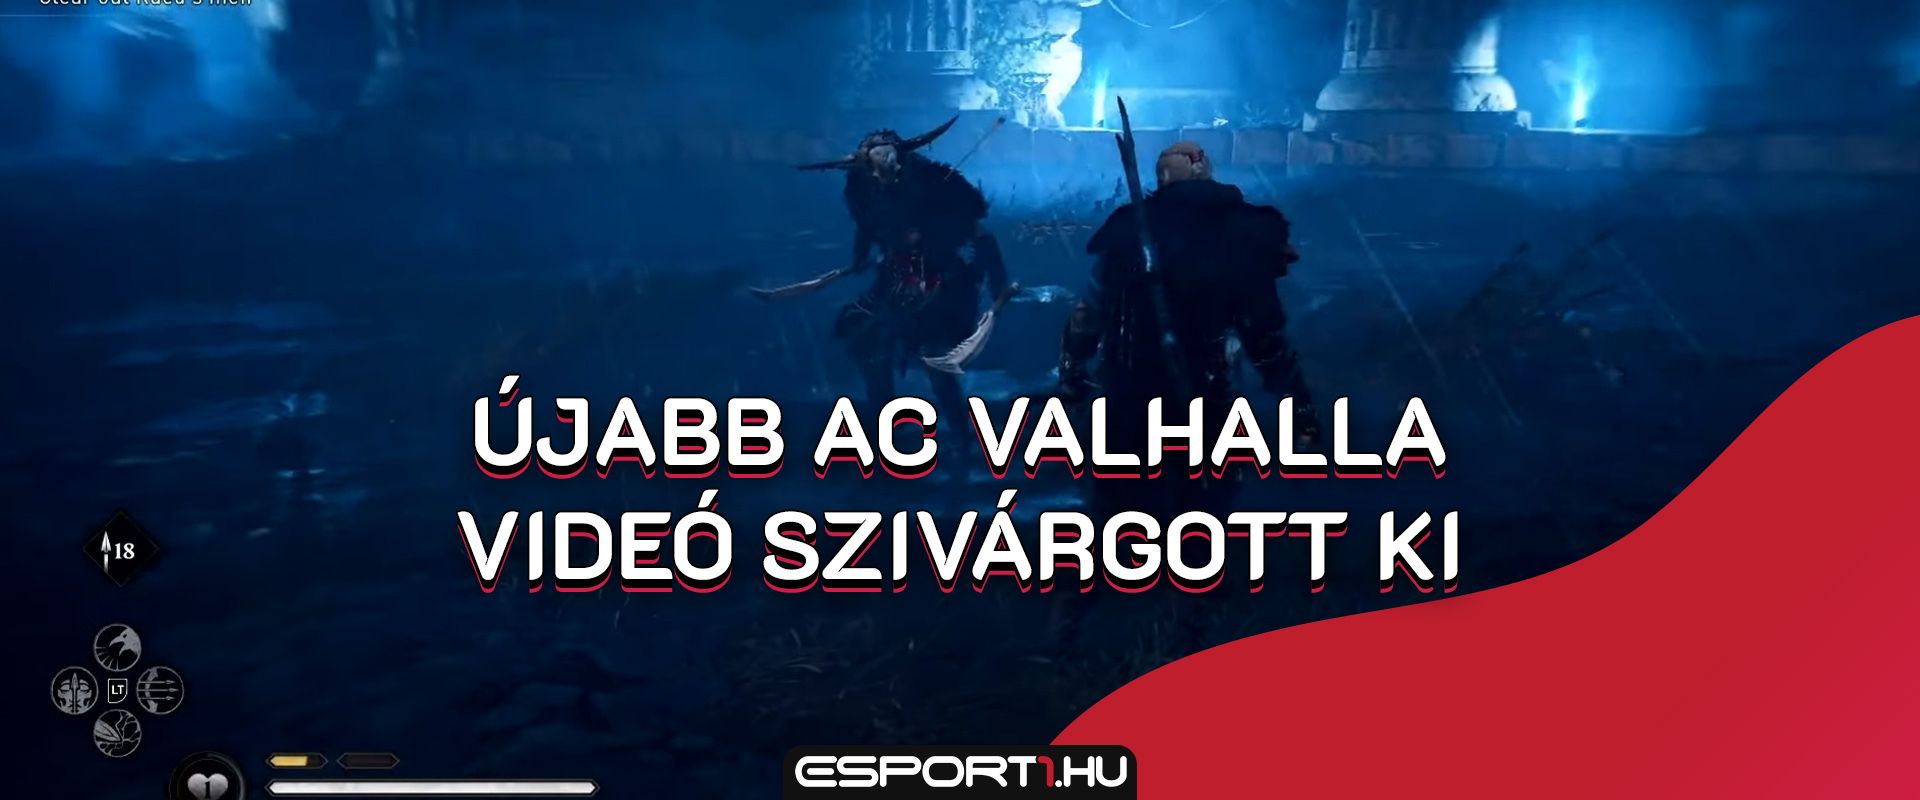 Assassin's Creed Valhalla Cordelia bossfight: Újabb videó szivárgott ki